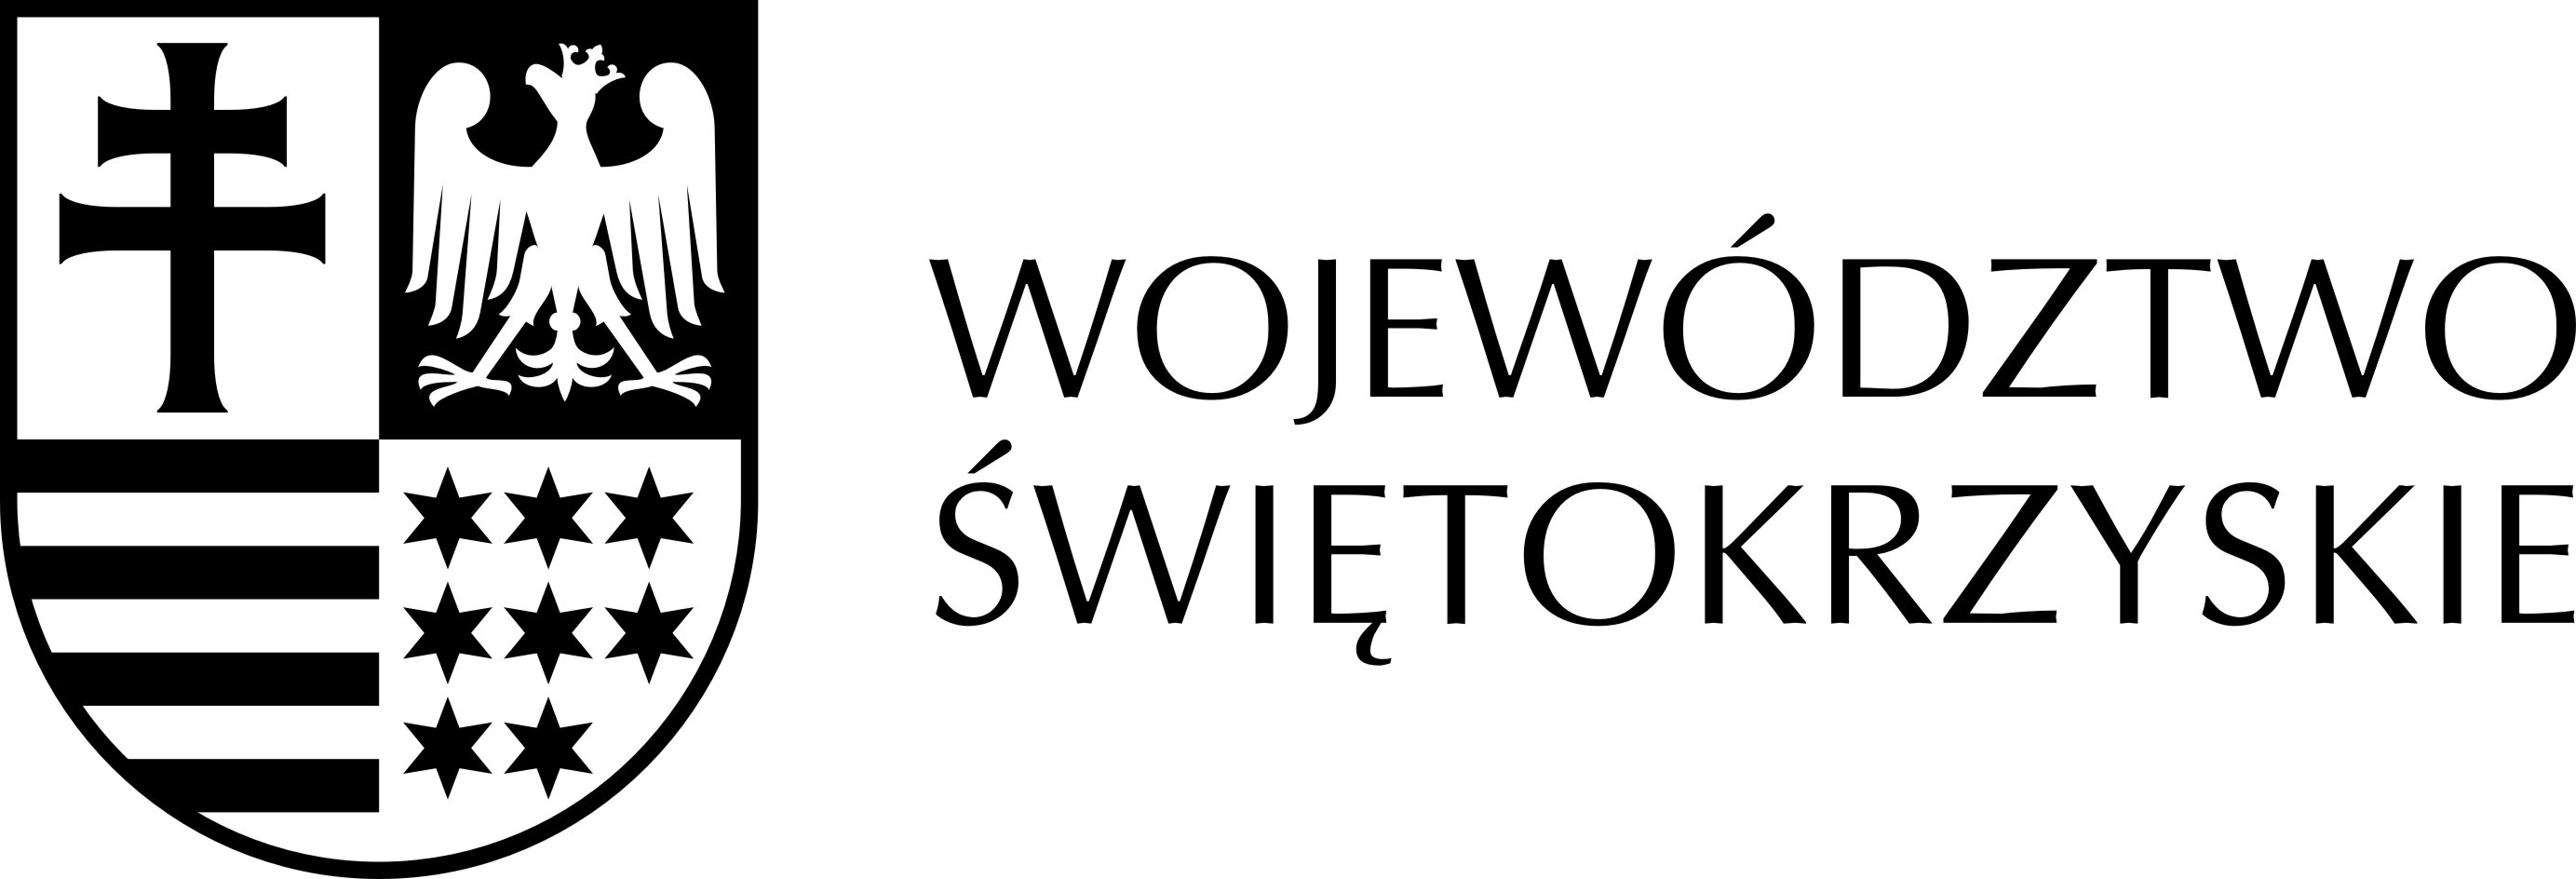 Logo Województwo świętokrzyskie